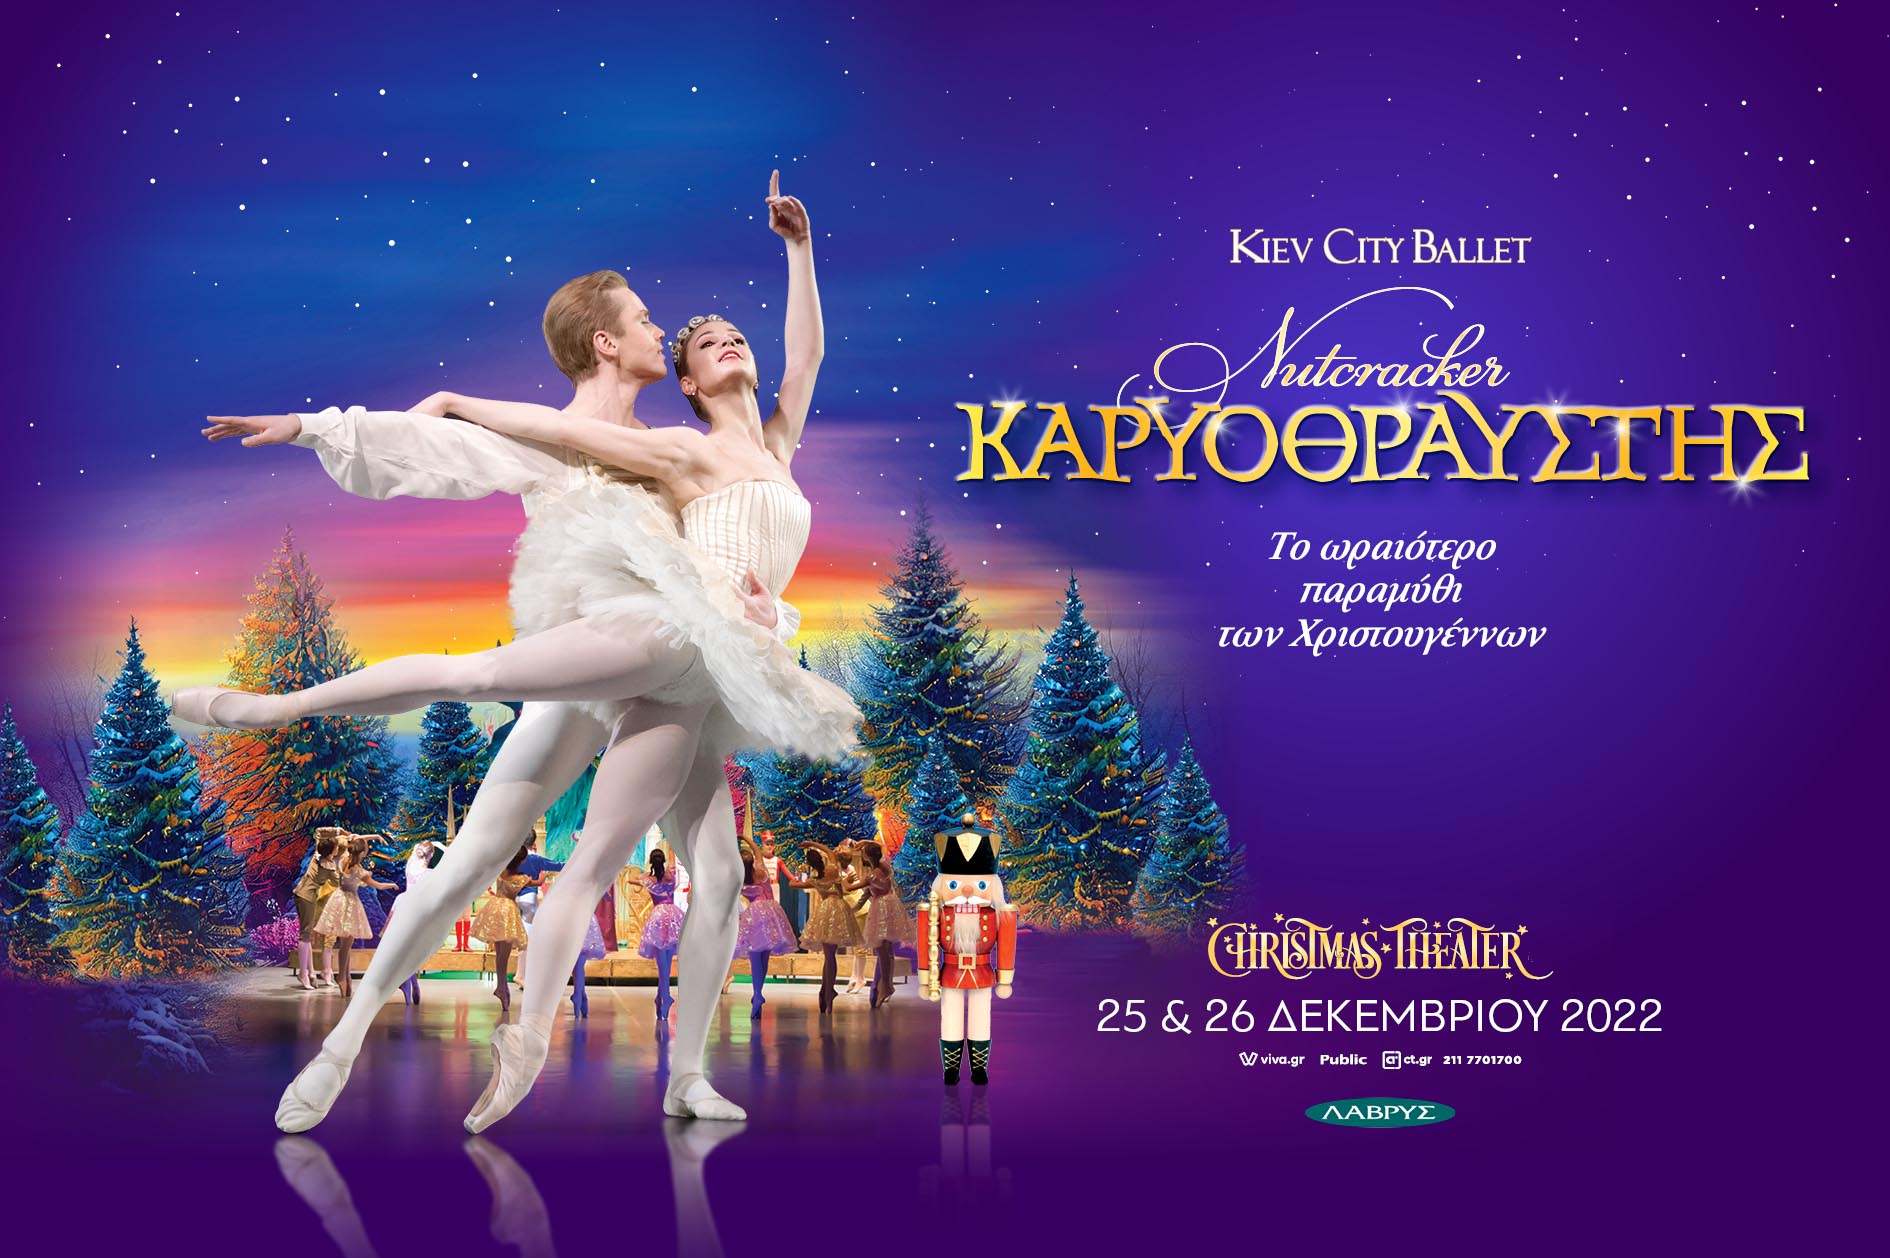 ΚΑΡΥΟΘΡΑΥΣΤΗΣ - Kiev City Ballet